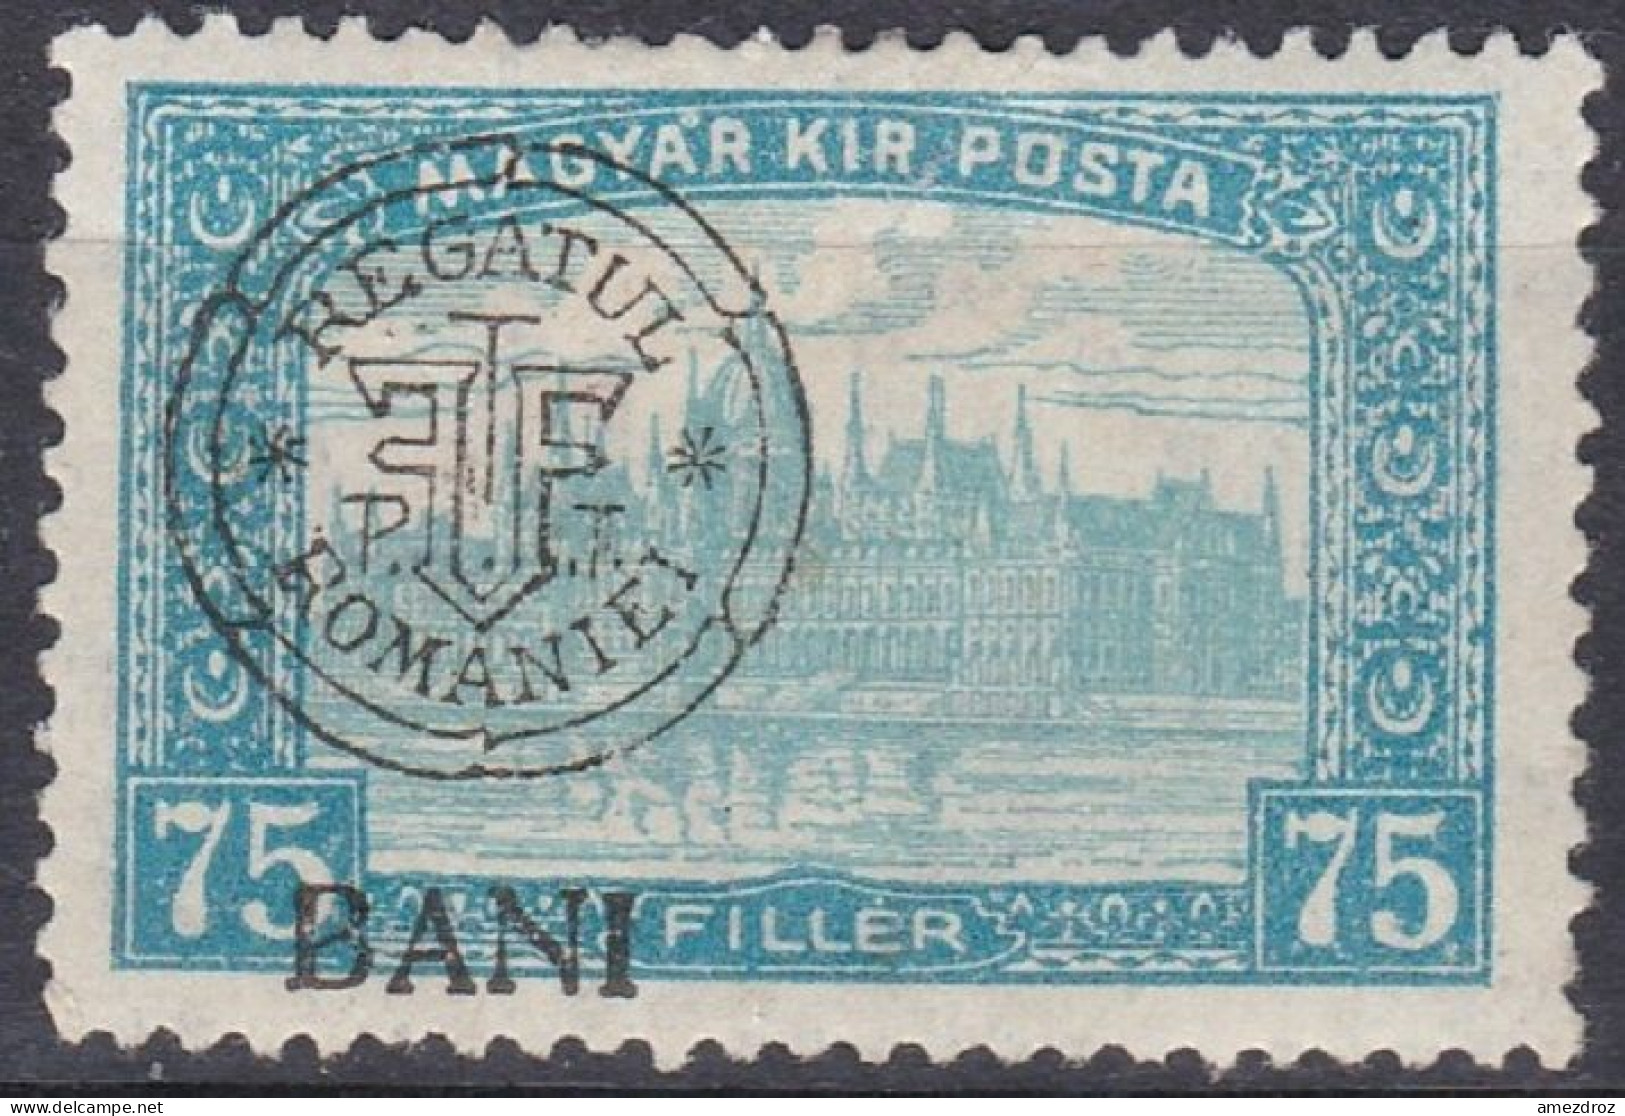 Transylvanie Cluj Kolozsvar 1919 N° 24 * Palais (J20) - Transylvanie